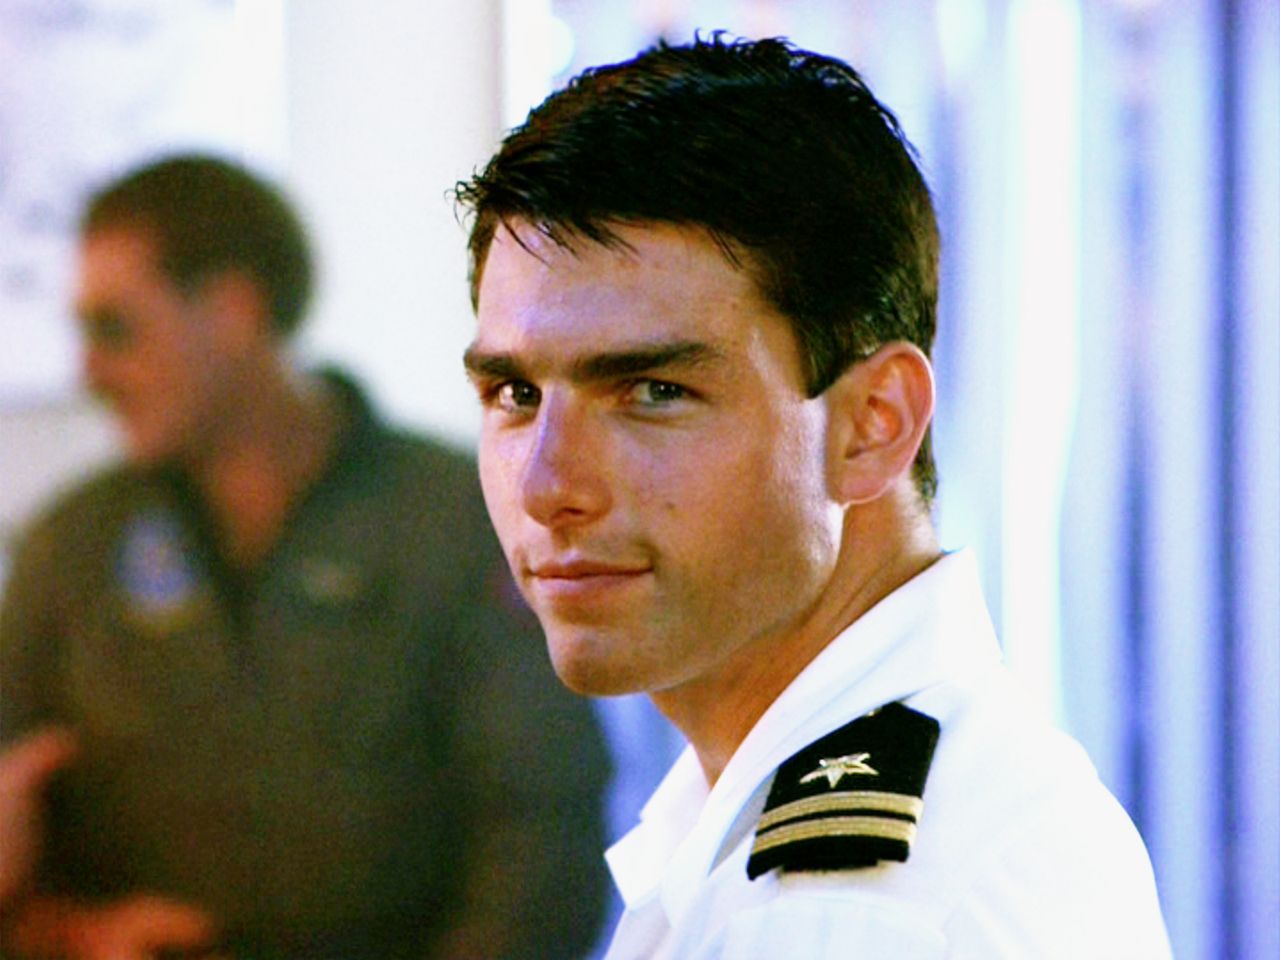 Tom Cruise wraca w "Top Gun: Maverick". Kiedyś szokował wystąpieniami